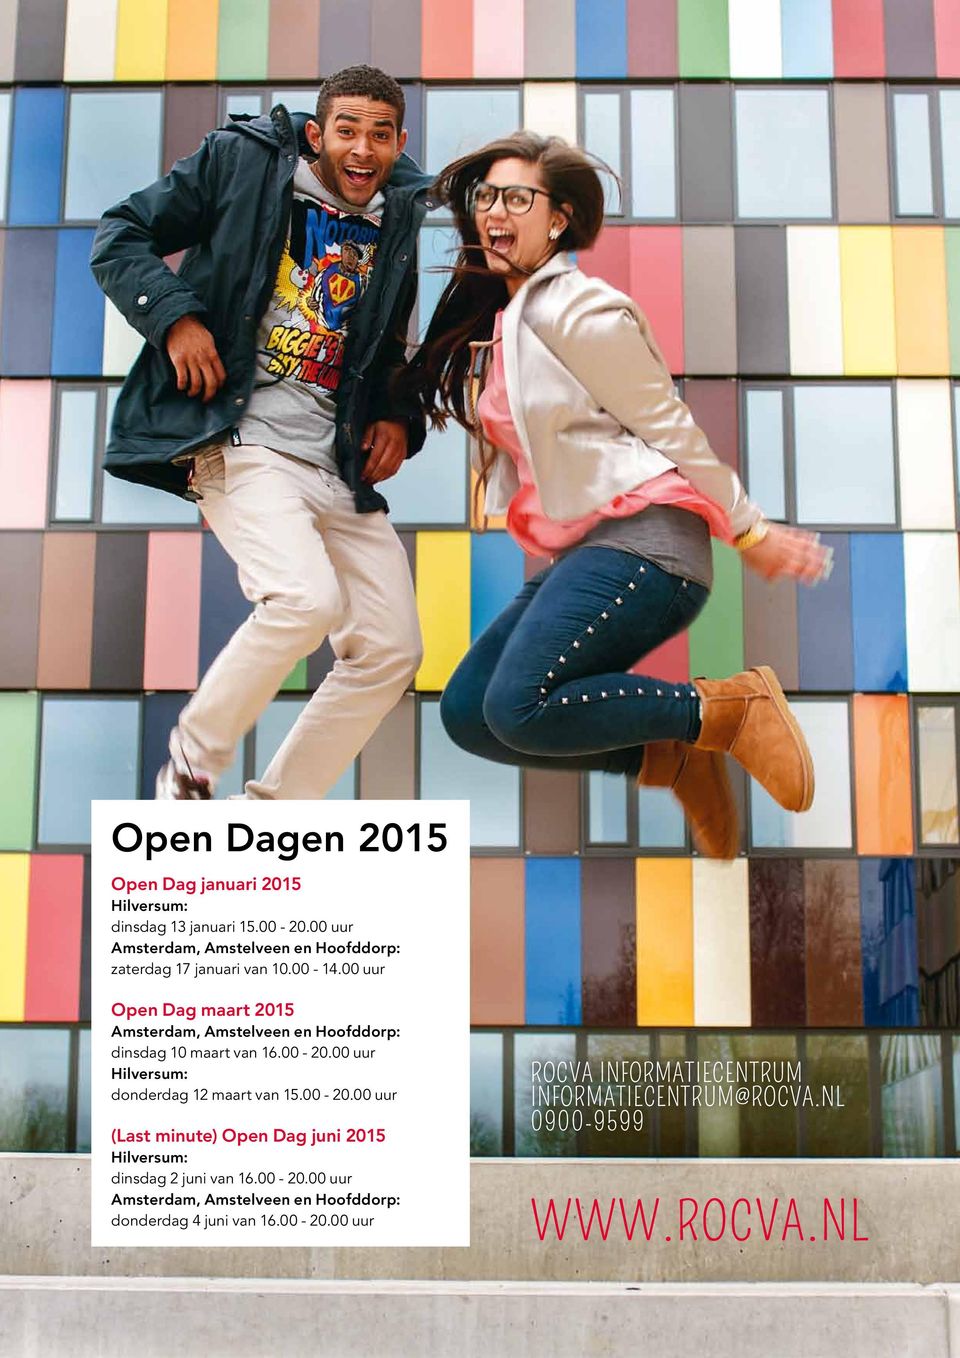 00 uur Open Dag maart 2015 Amsterdam, Amstelveen en Hoofddorp: dinsdag 10 maart van 16.00-20.